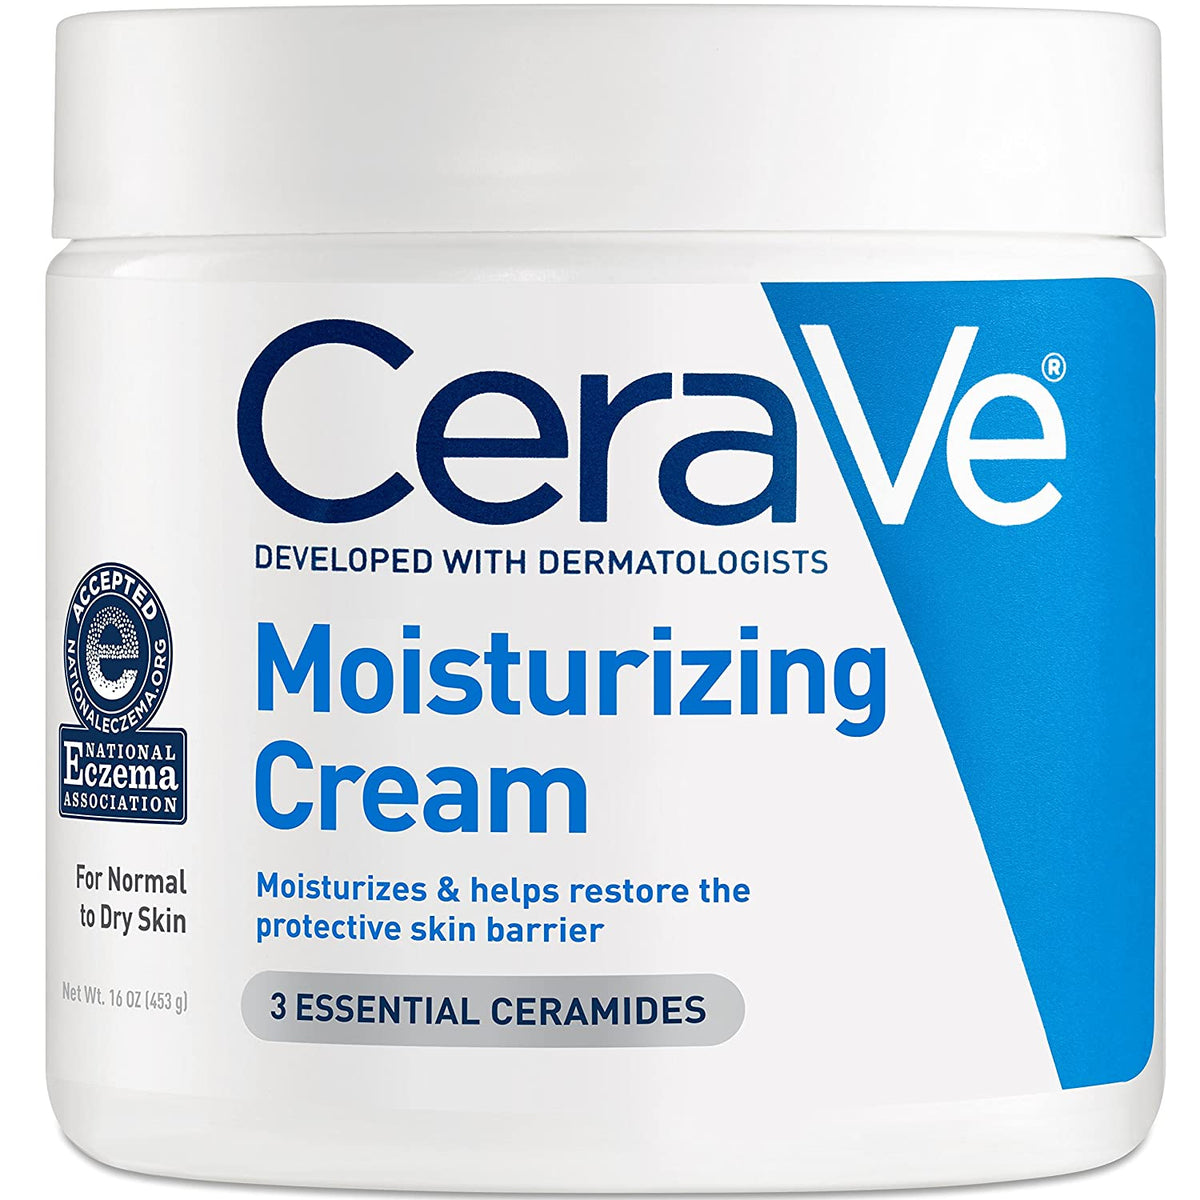 CeraVe Moisturizing Cream (453 g) CeraVe